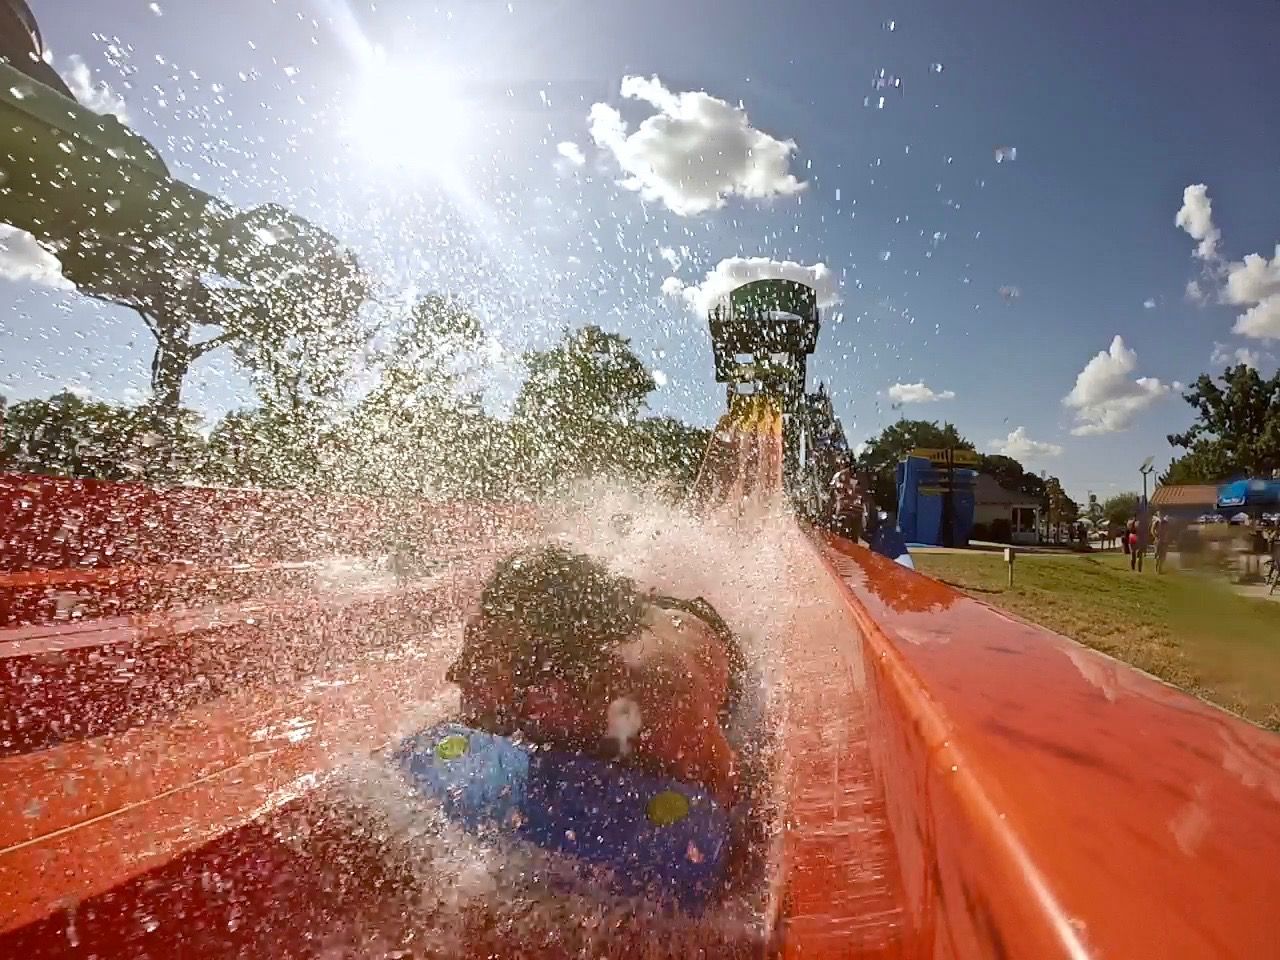 Man making huge splash on a water slide.